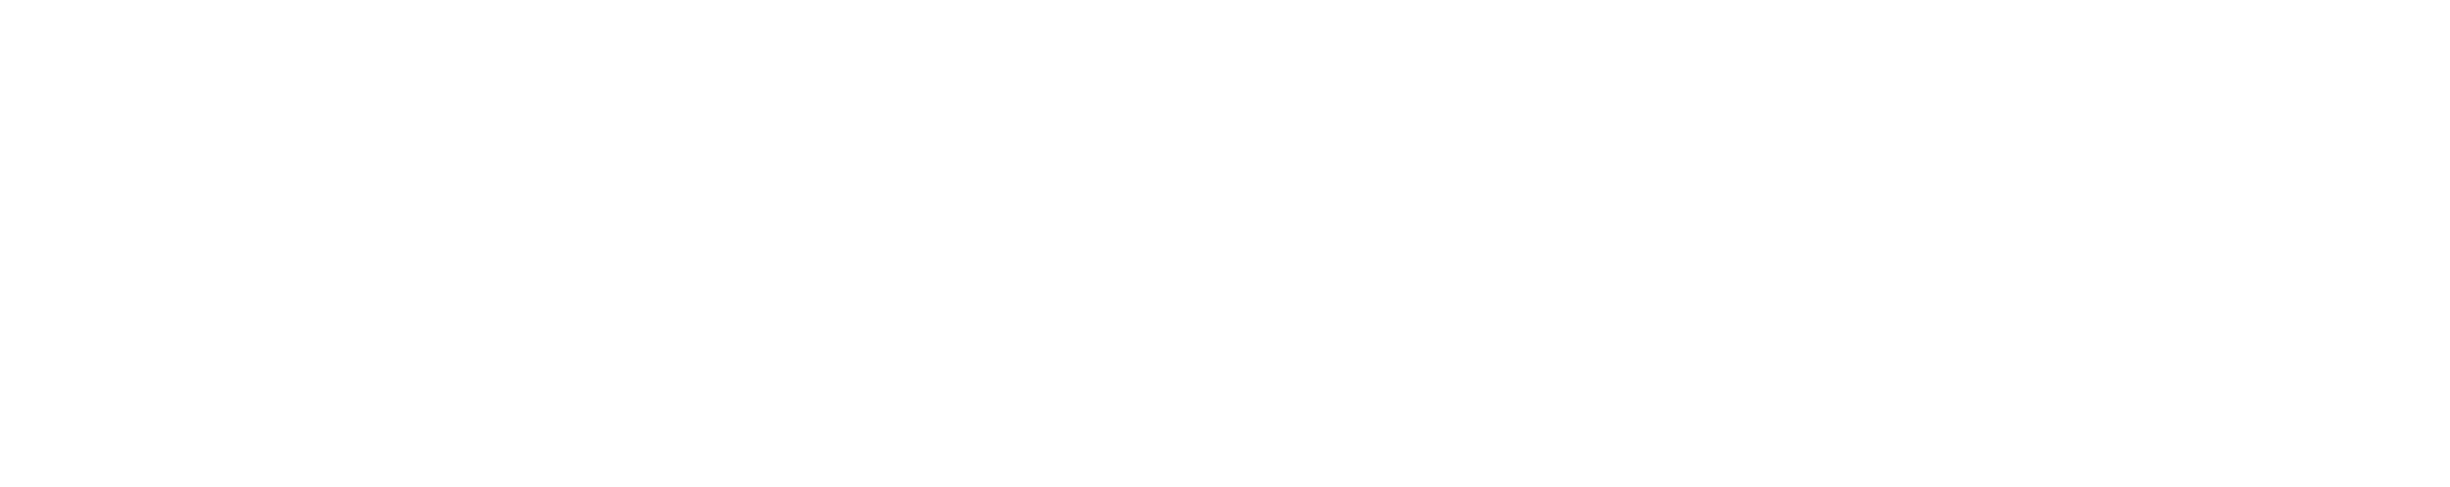 Logotipo da Sony